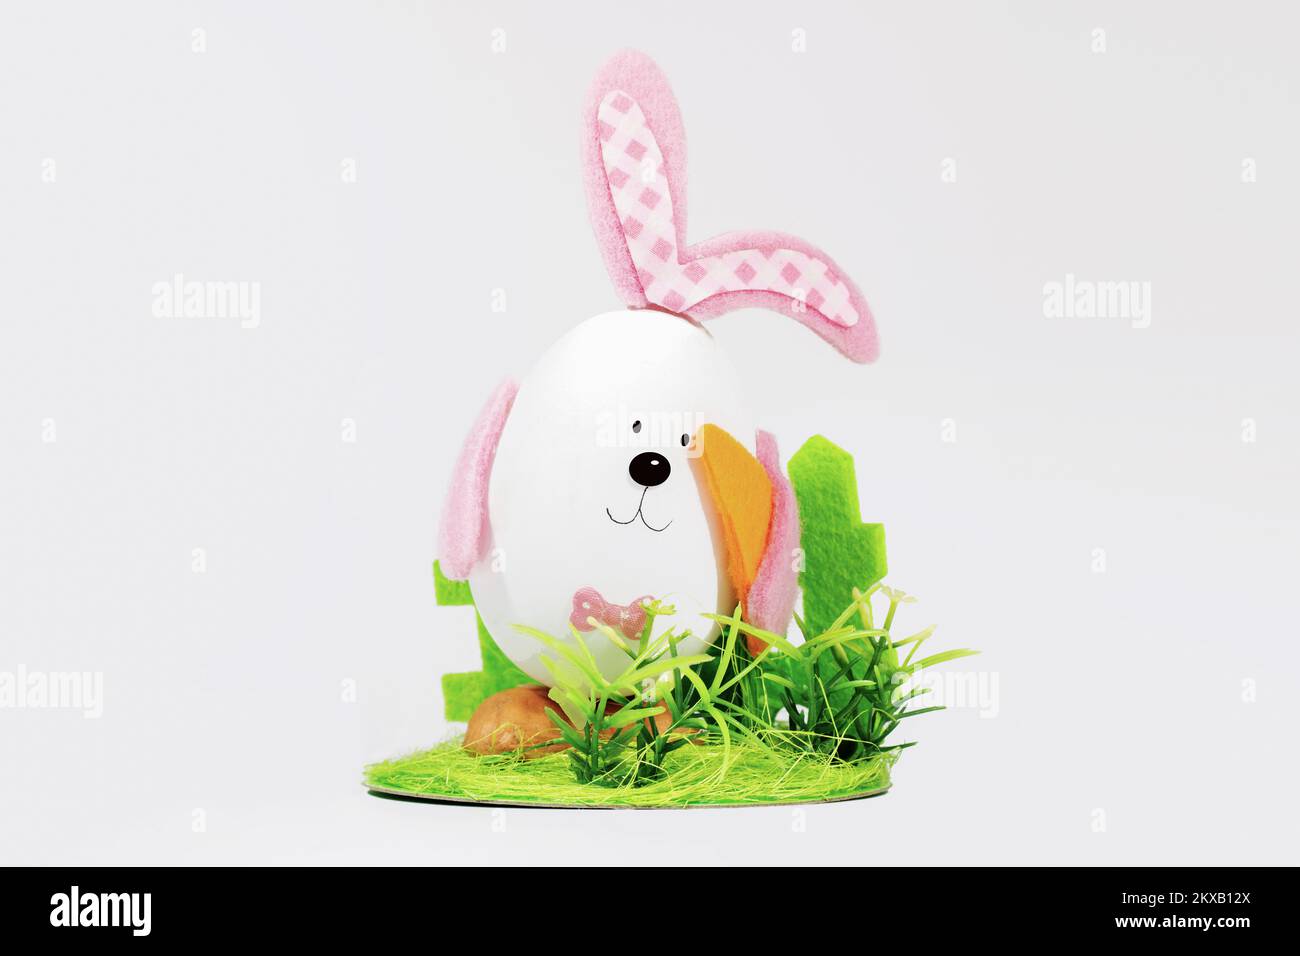 Oeuf de Pâques avec des oreilles sous forme de lapin de Pâques, avec des carottes sur une pelouse verte. Carte de Pâques. Concept de pâques minimal Banque D'Images